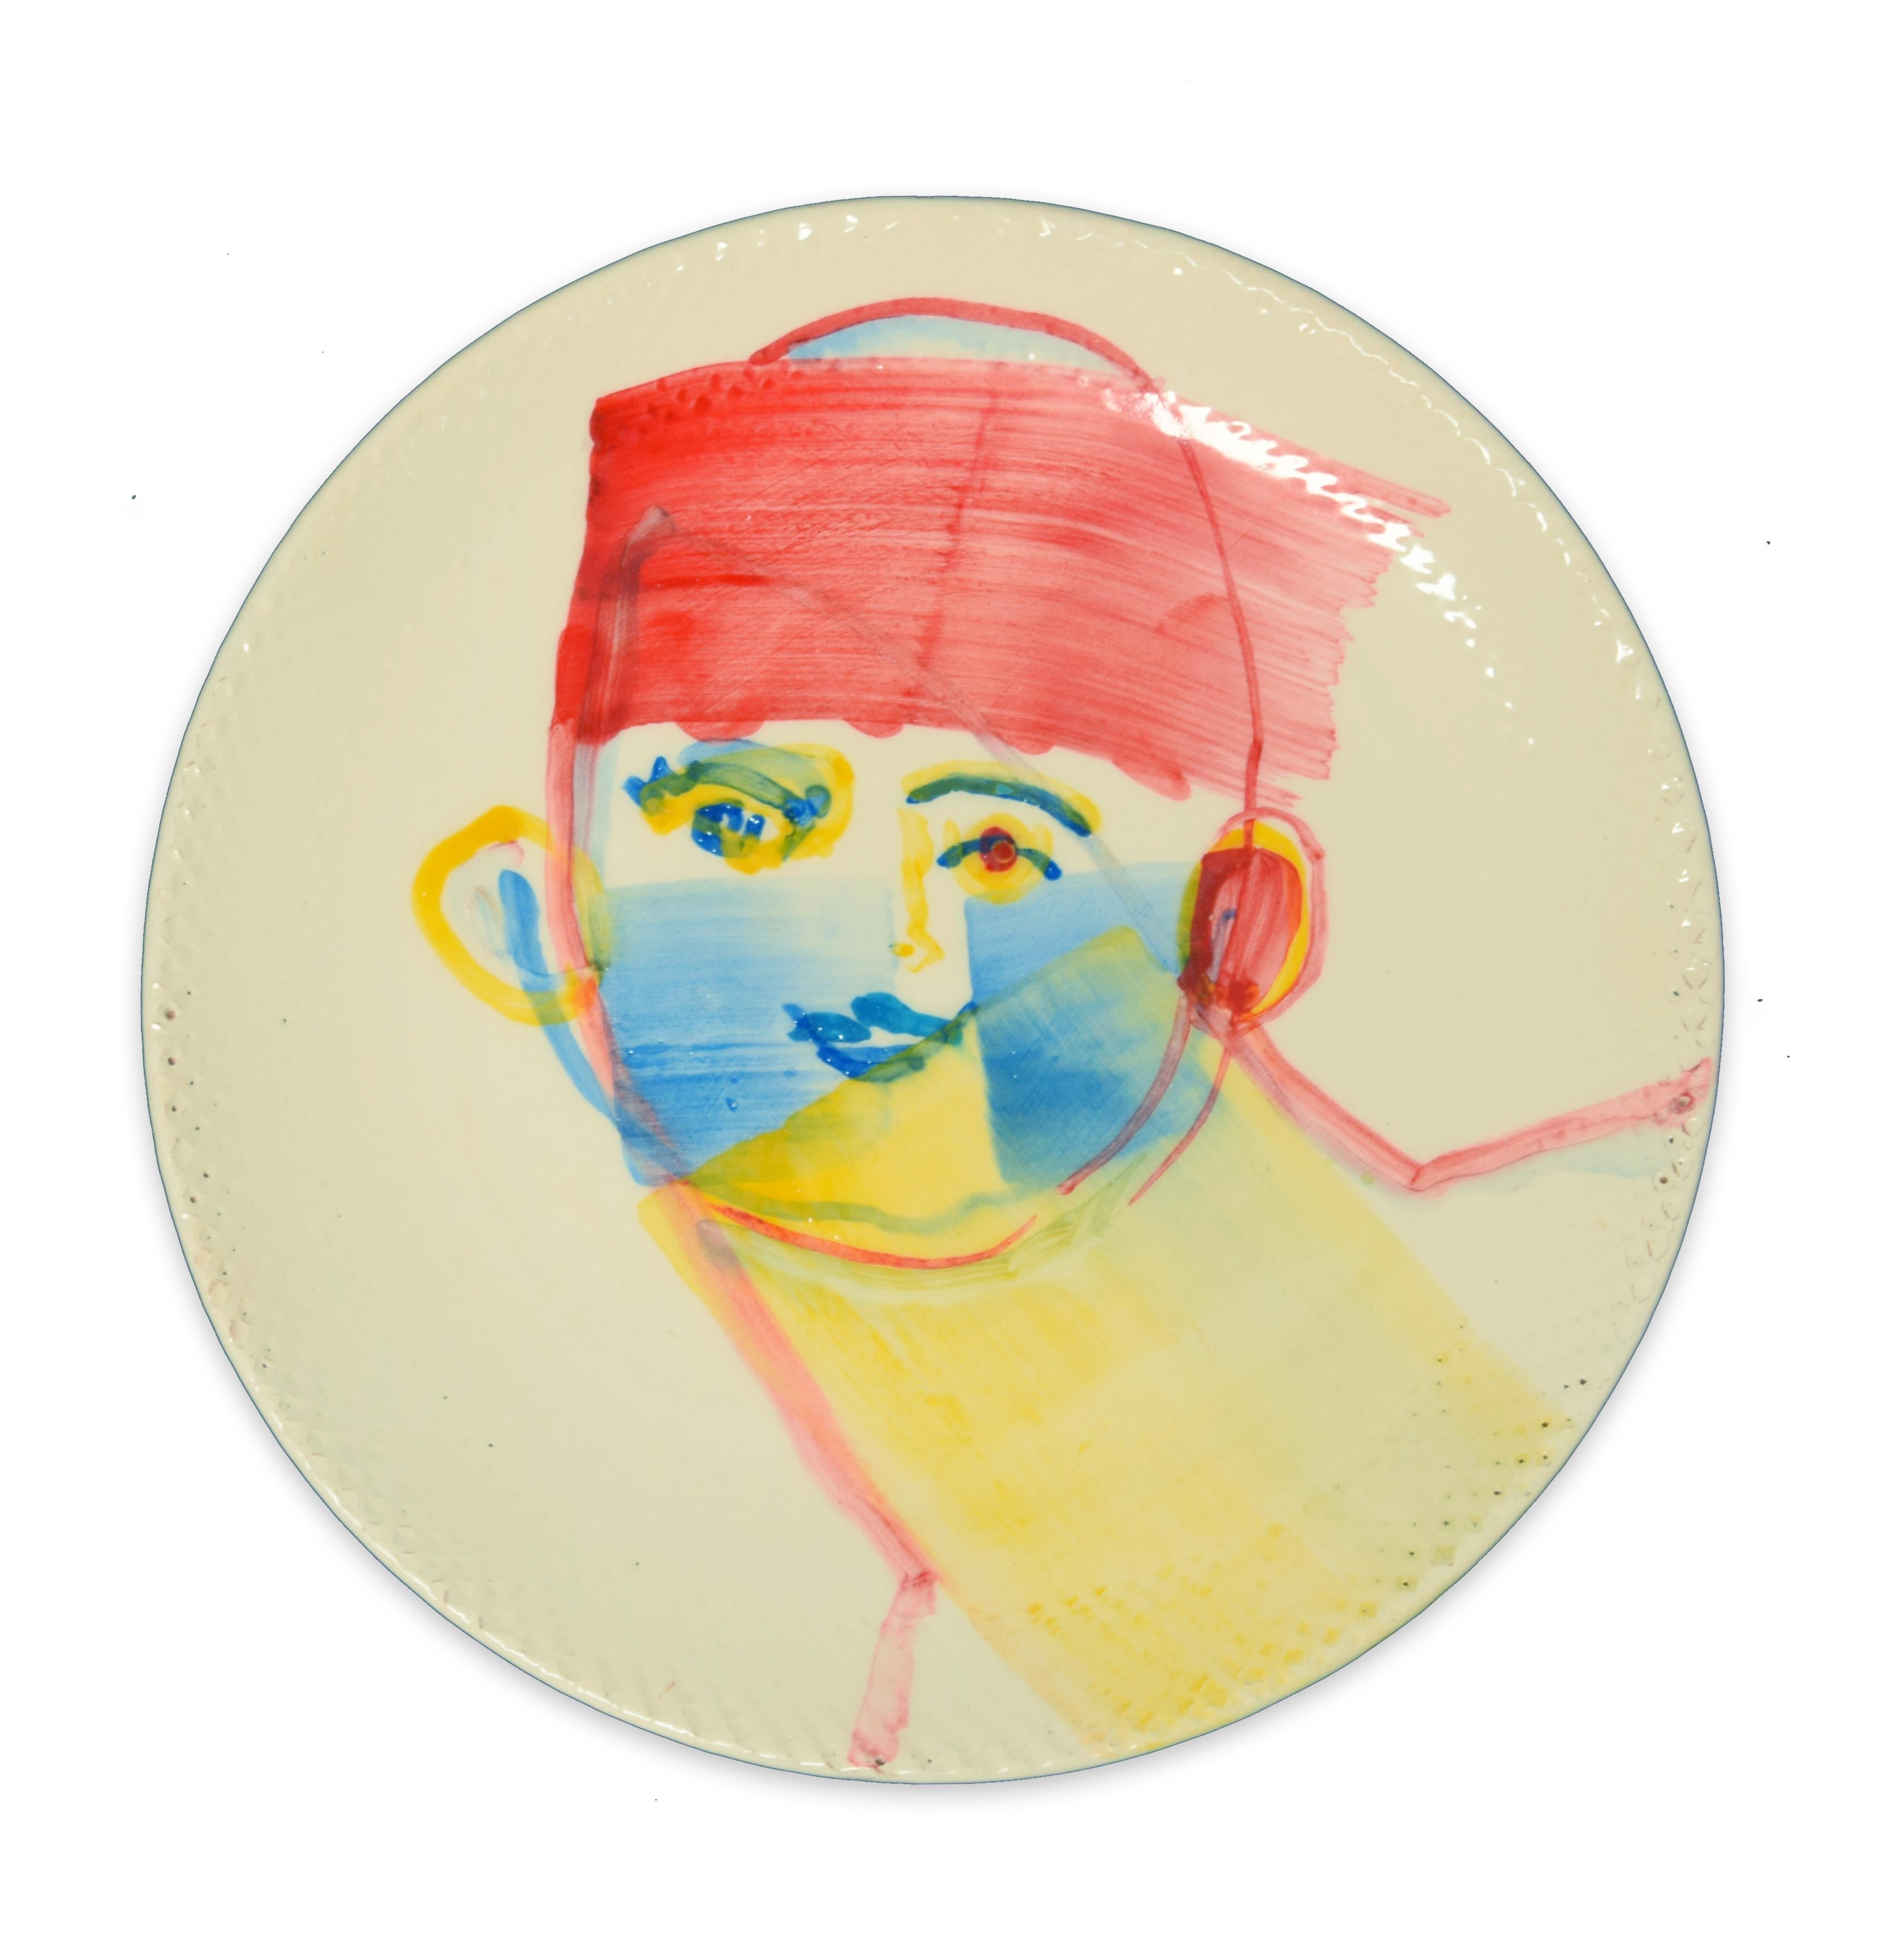 Chinese Man - Original  Hand-made Flat Ceramic Dish by A. Kurakina - 2019 - Art by Anastasia Kurakina